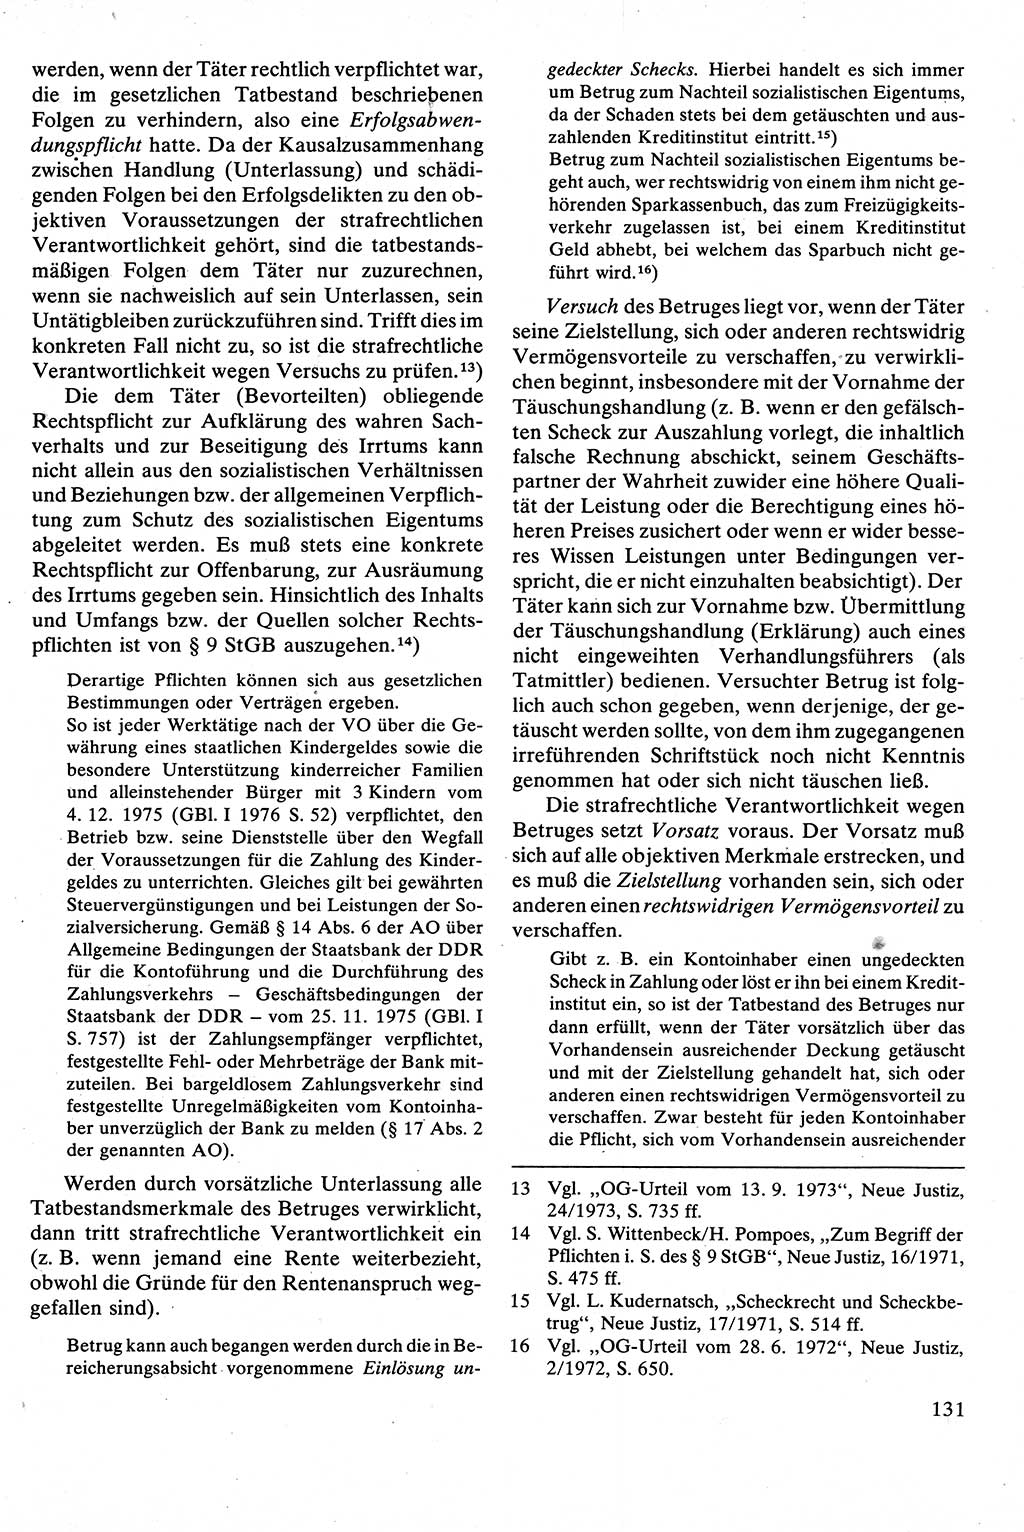 Strafrecht [Deutsche Demokratische Republik (DDR)], Besonderer Teil, Lehrbuch 1981, Seite 131 (Strafr. DDR BT Lb. 1981, S. 131)